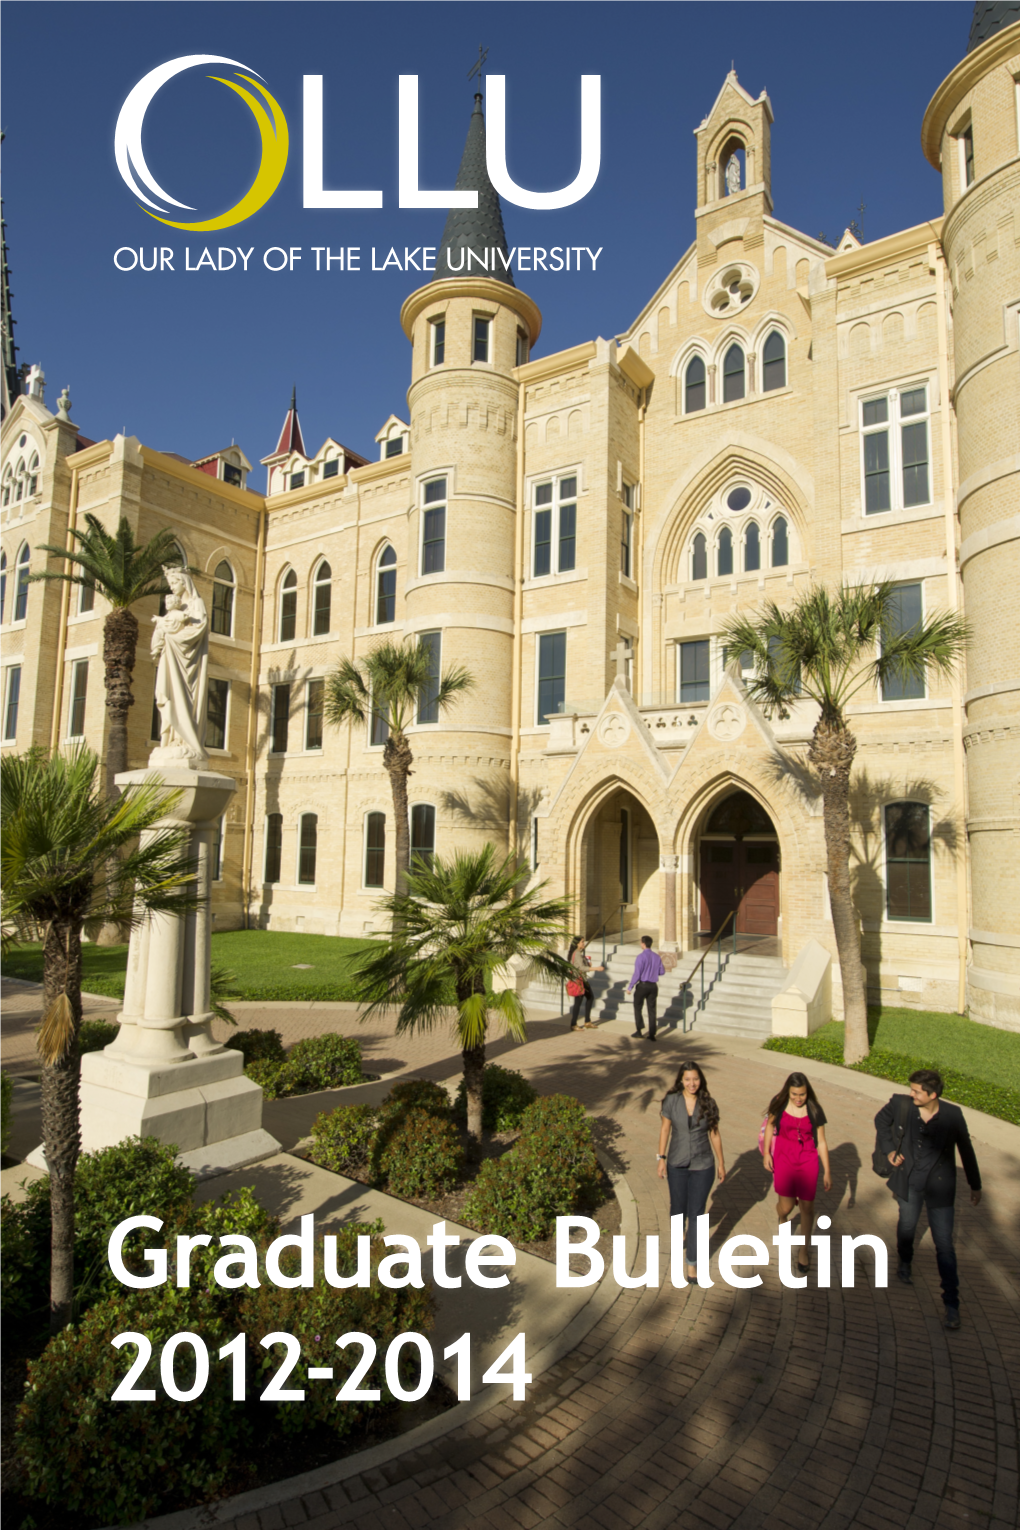 Graduate Bulletin 2012-2014